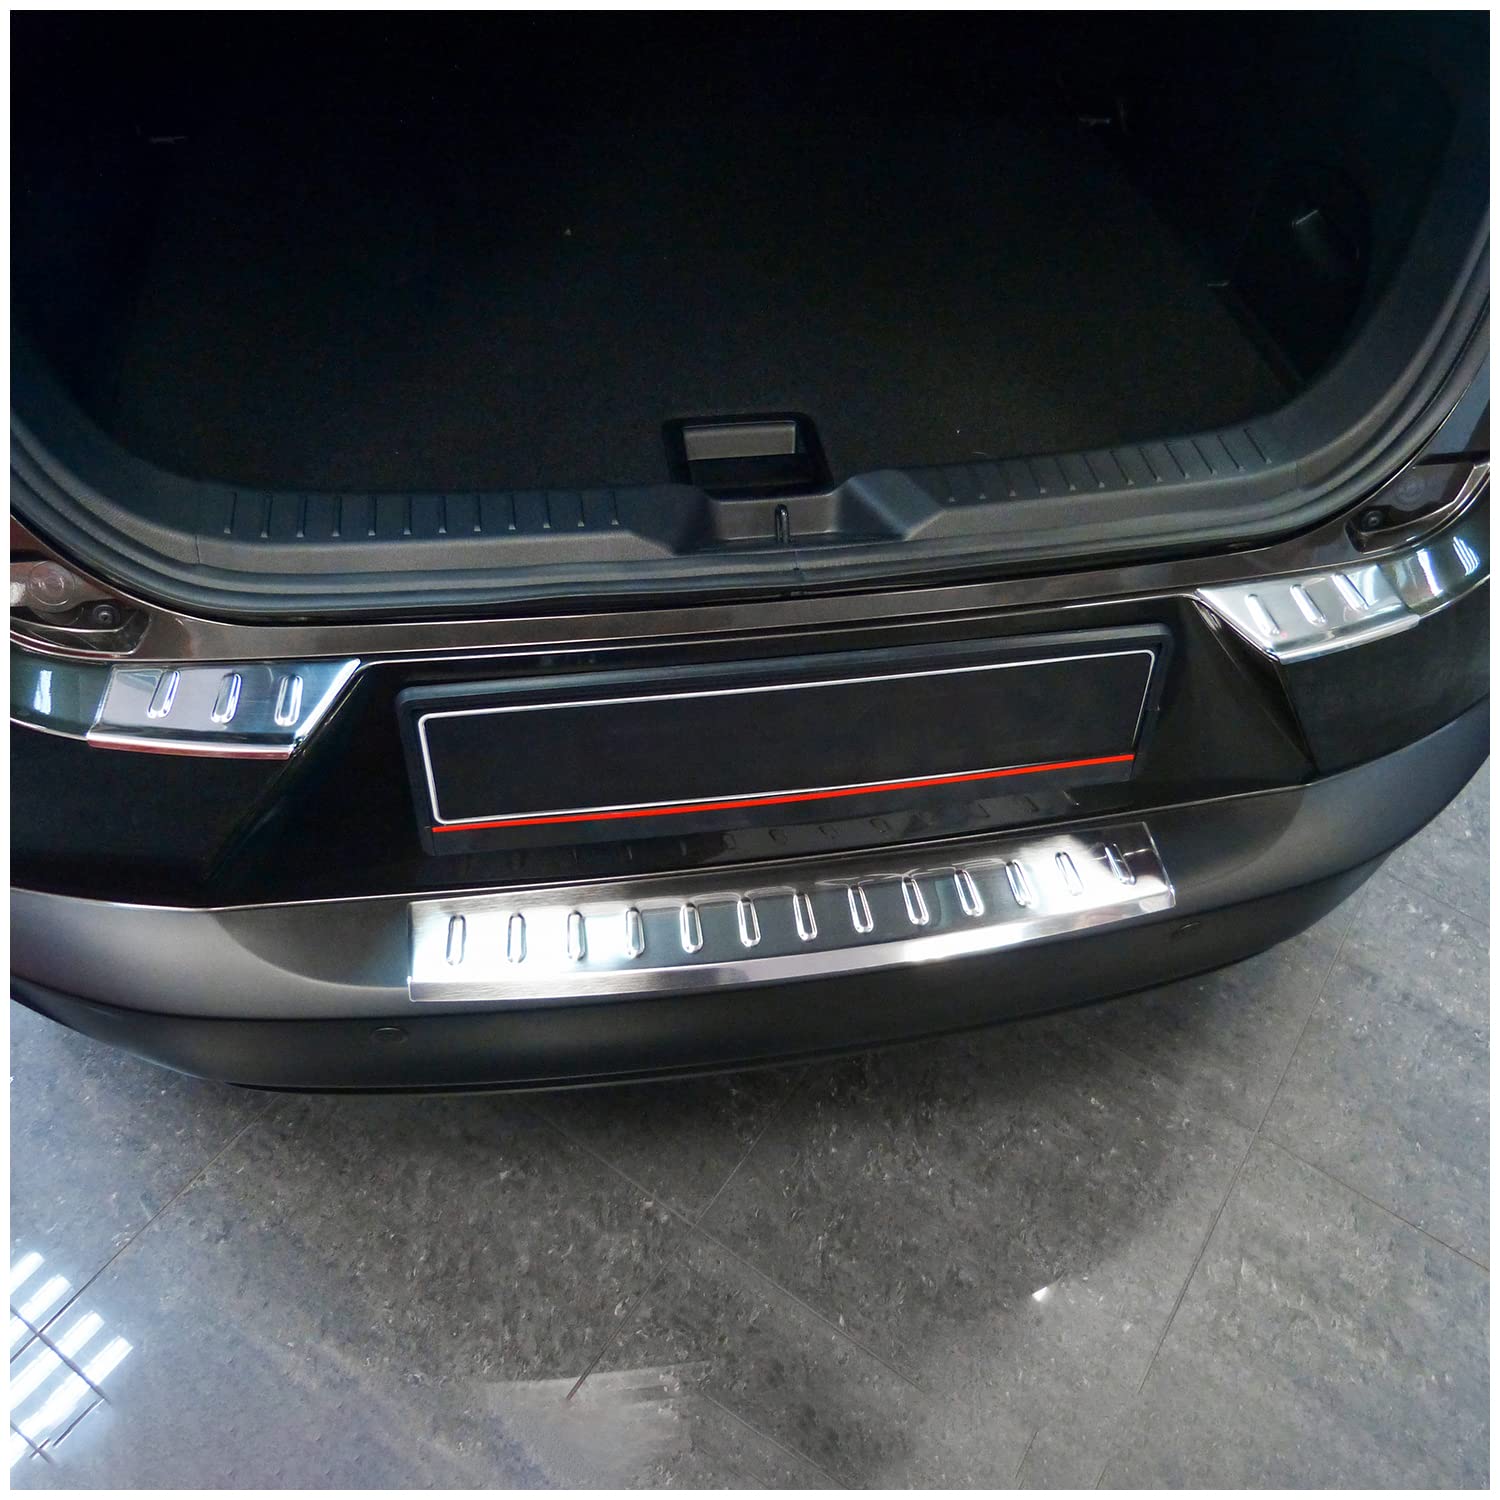 teileplus24 L537 Ladekantenschutz V2A Edelstahl kompatibel mit Mazda CX-3 2015- Abkantung von teileplus24